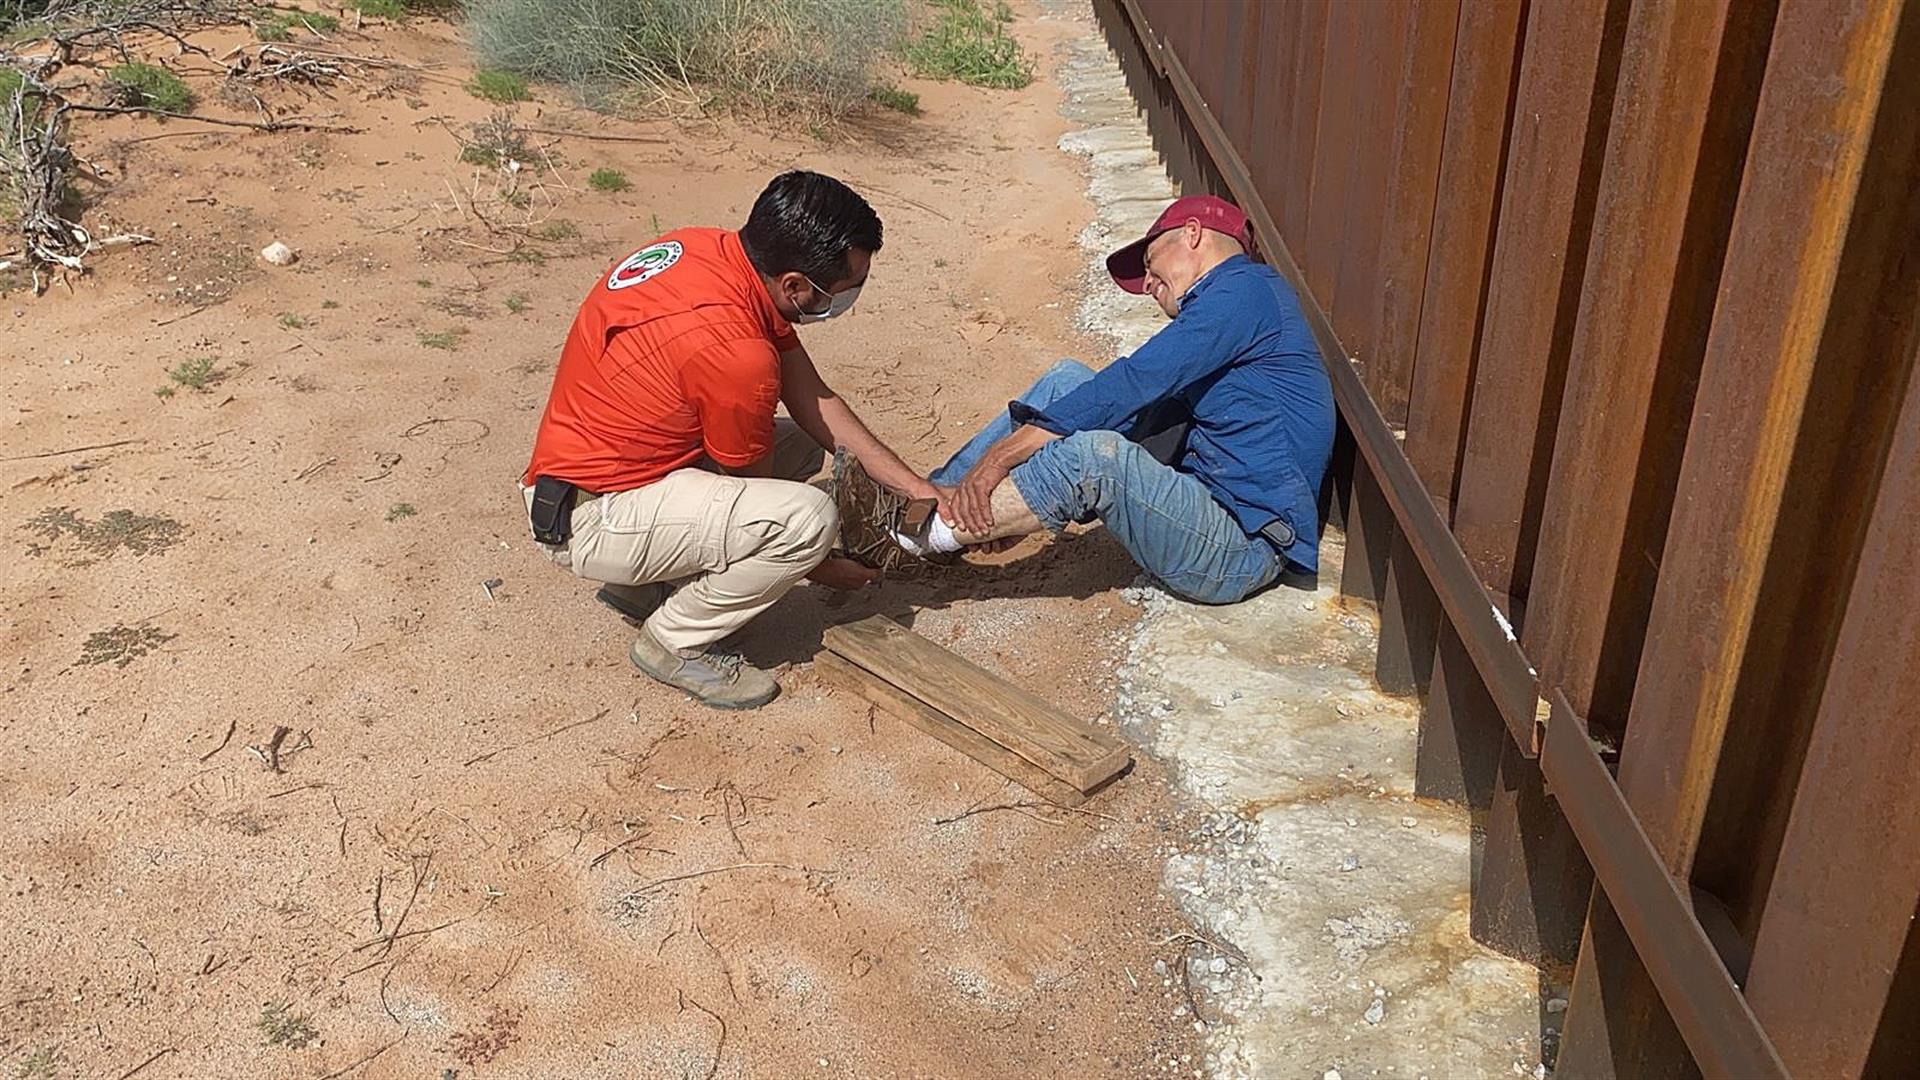 Fotografía cedida por el Instituto Nacional de Migración (INM) que muestra a un migrante lesionado al caer del muro fronterizo, en la ciudad de Chihuahua, México. (Foto Presa Libre: EFE)